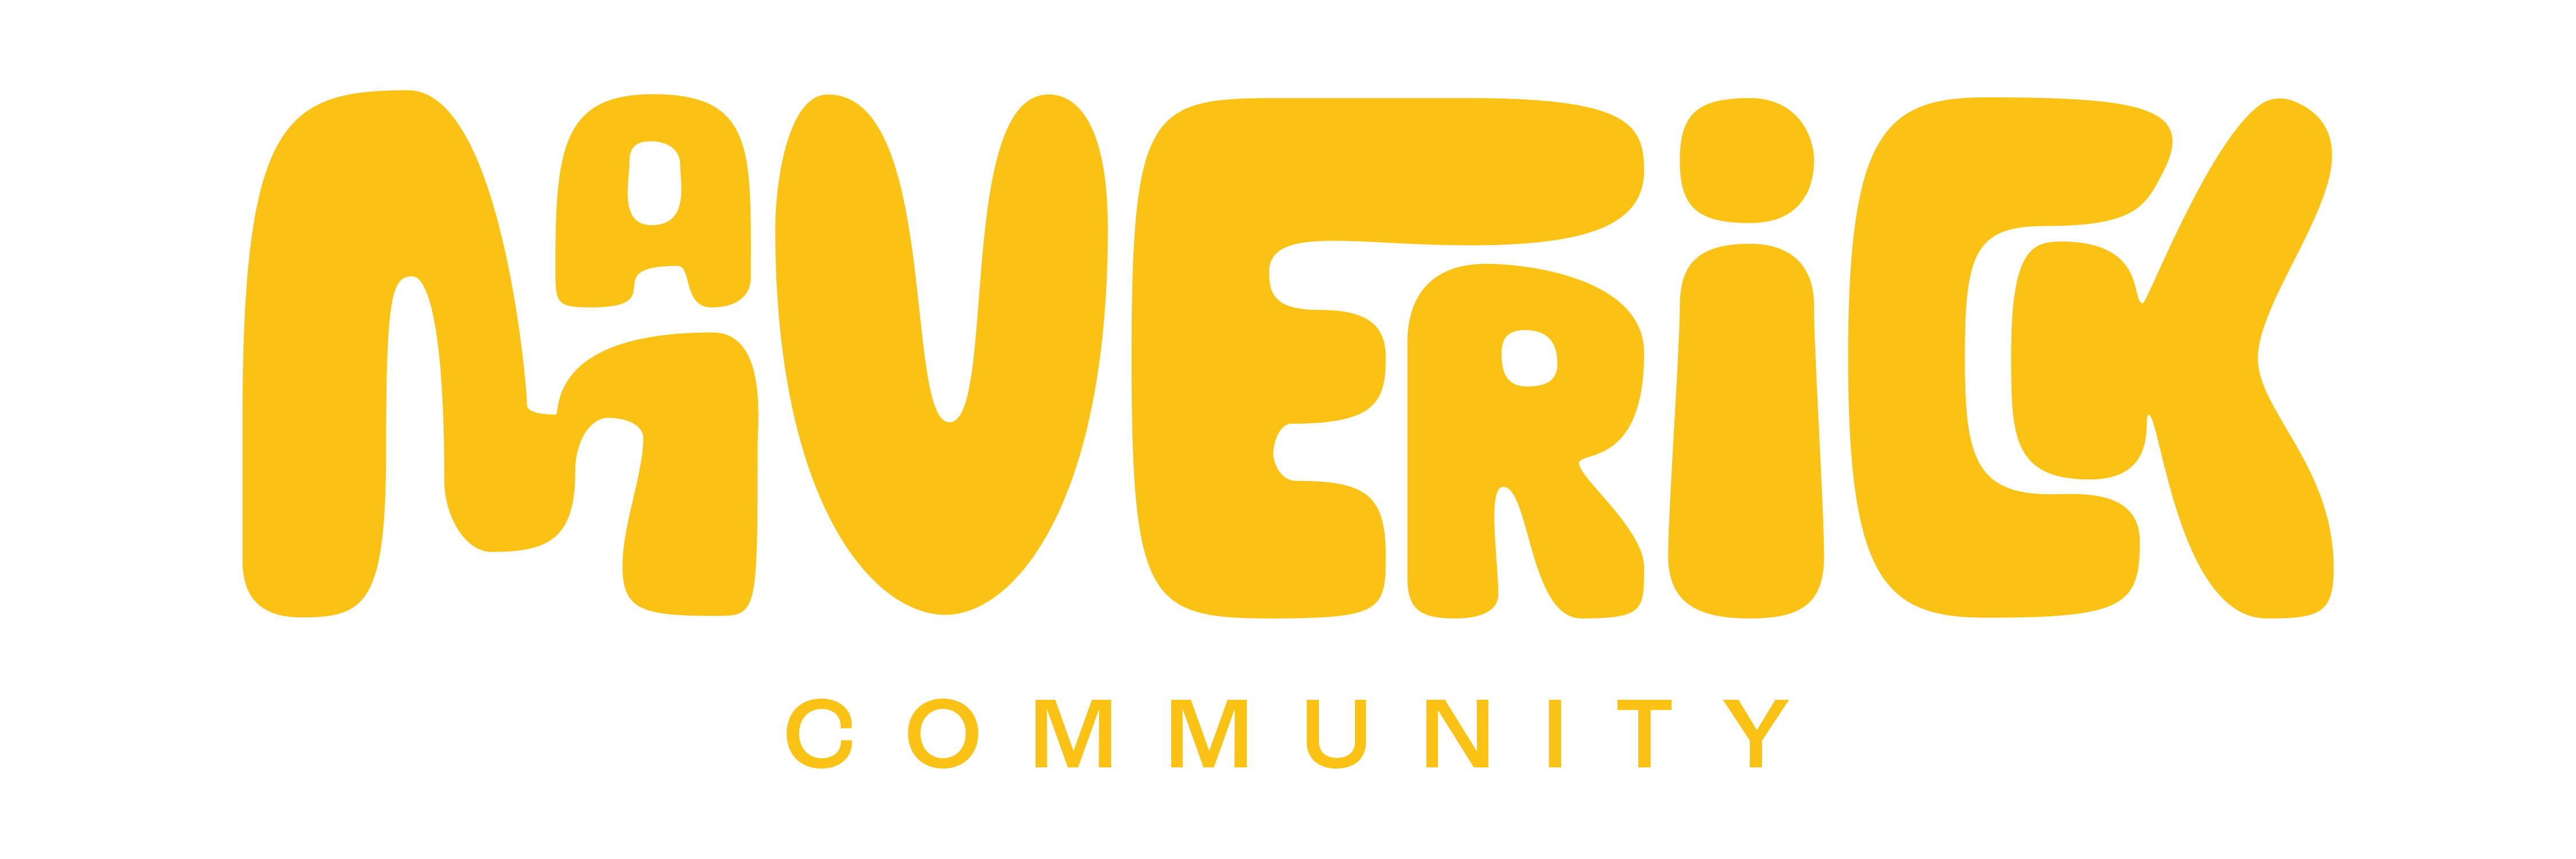 Mav-Venice_FULL-community